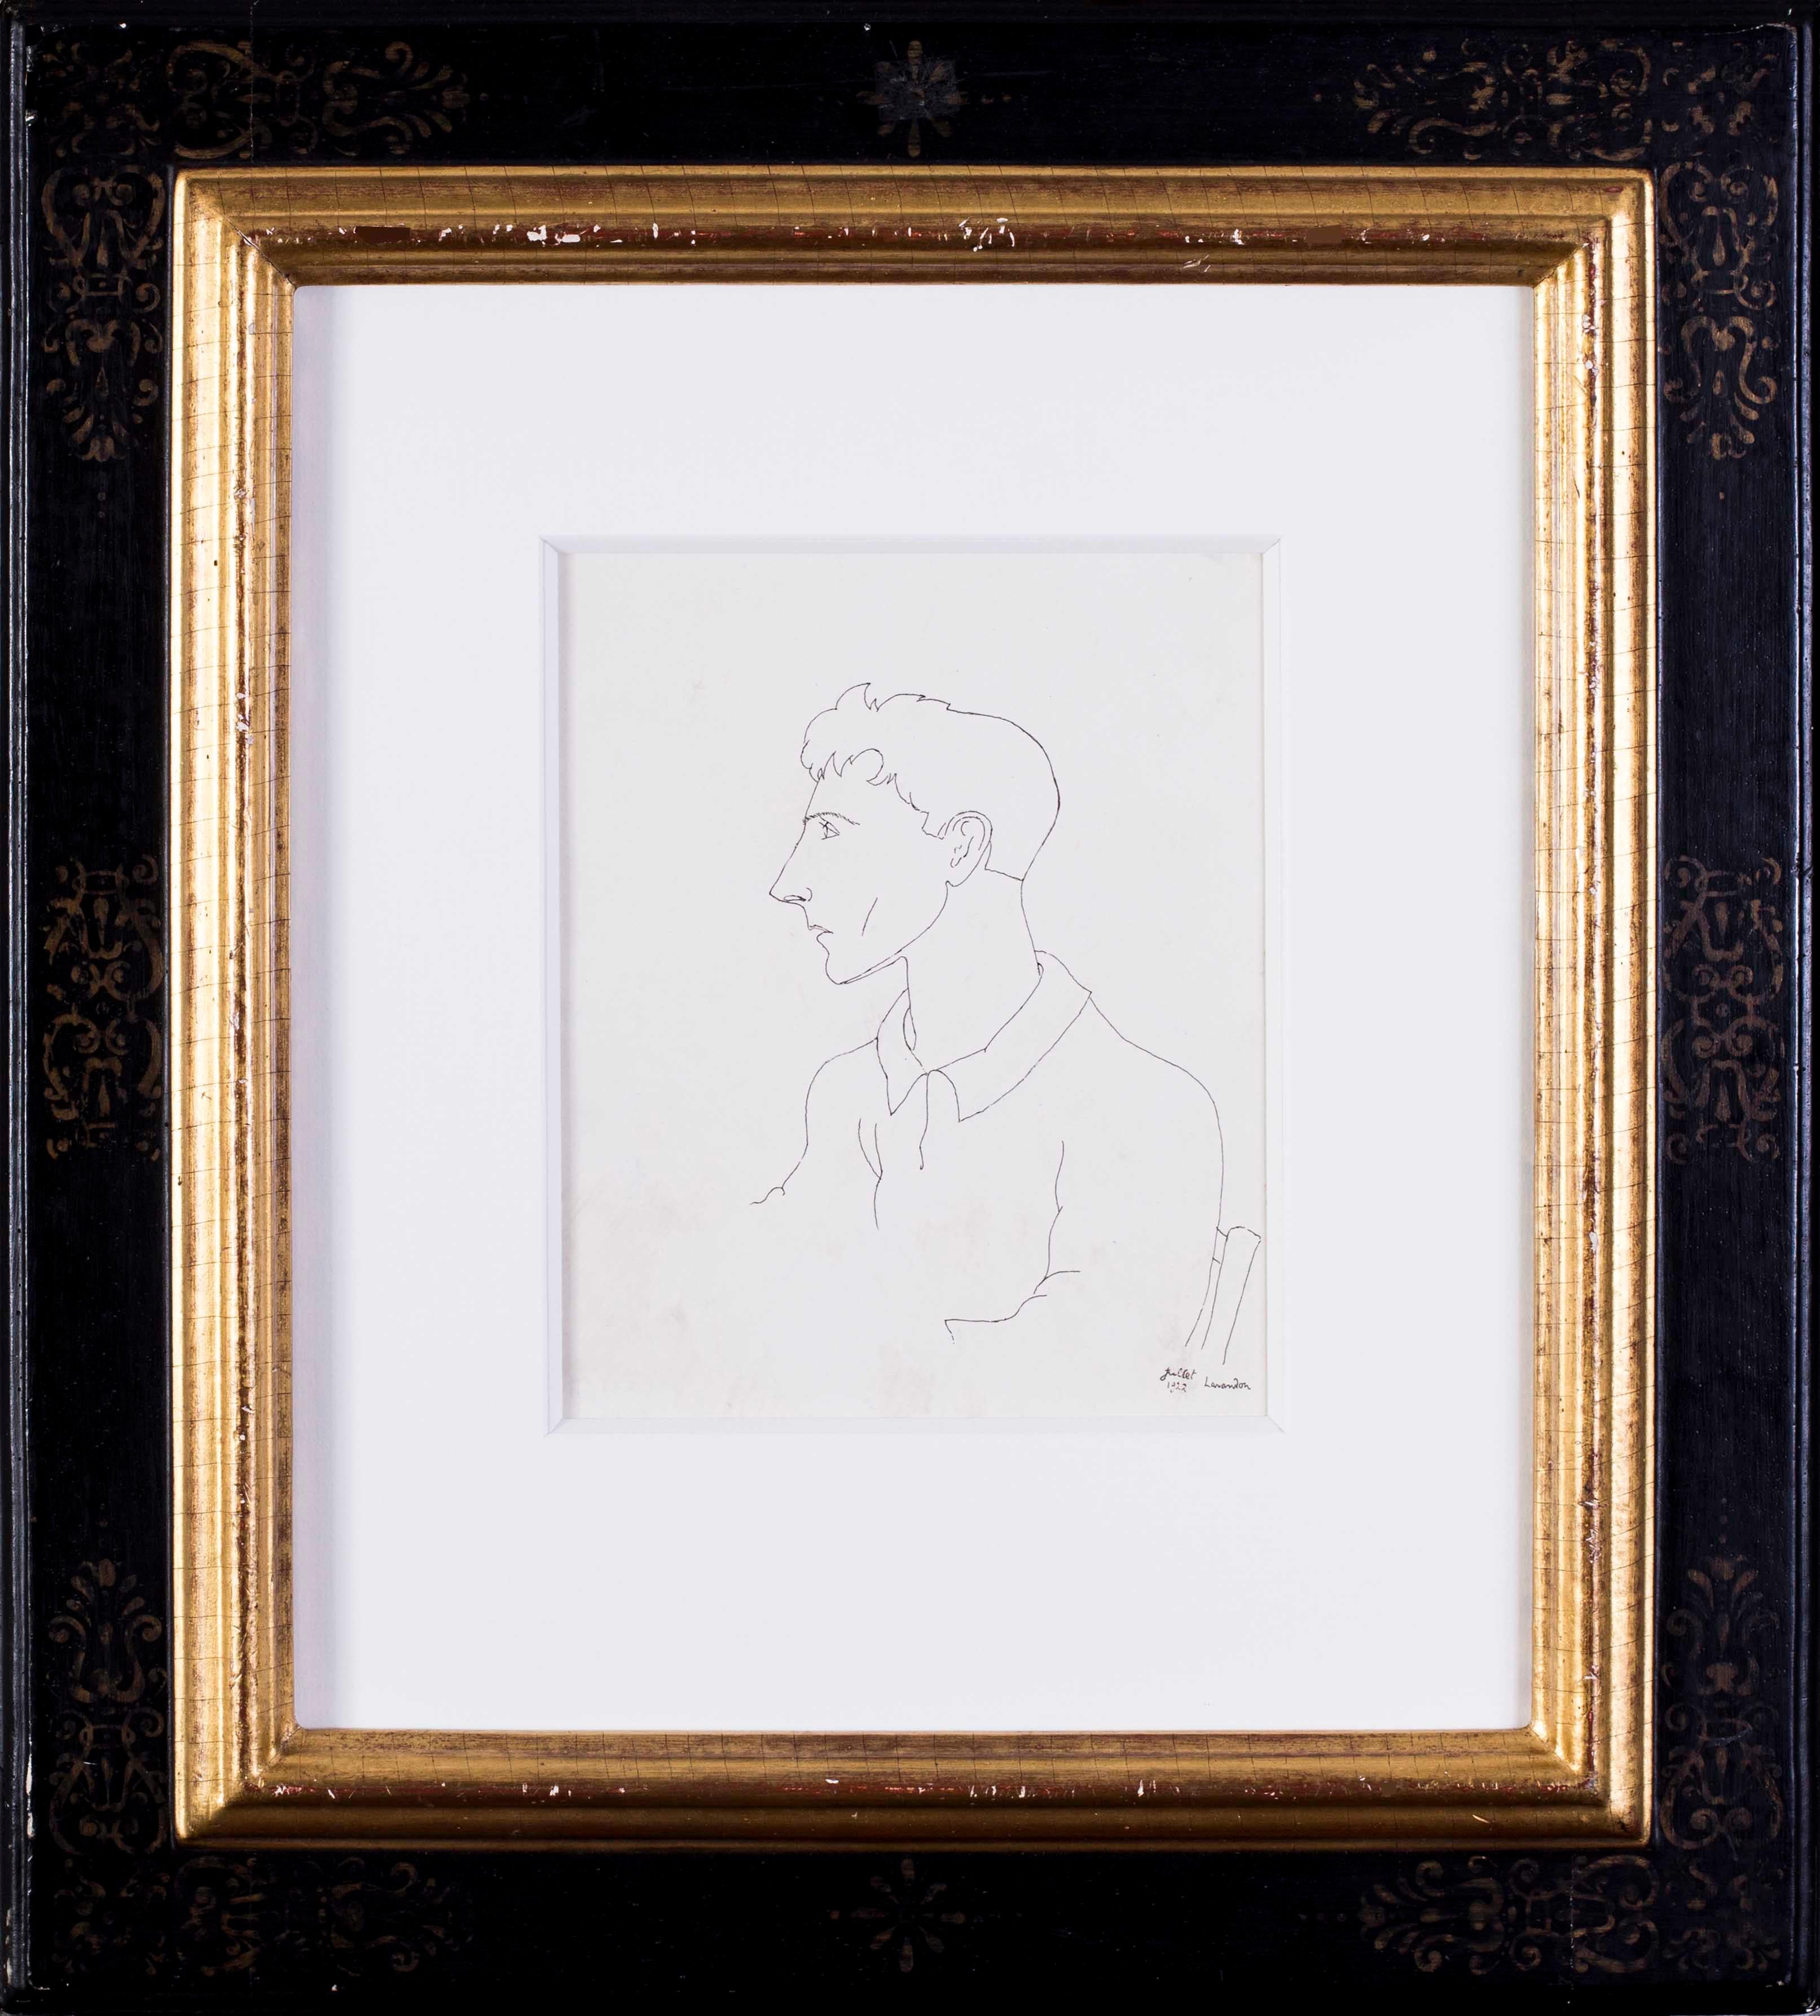 Jean Cocteau (Französisch, 1889 - 1963)
Selbstporträt, Le Voyageur dans les glaces (der Reisende im Eis)
1922 hingerichtet
Bezeichnet und datiert "Juillet 1922, Lavandon" (unten rechts)
Tusche auf Papier
9.1/2 x 7,1/2 Zoll. (24 x 19